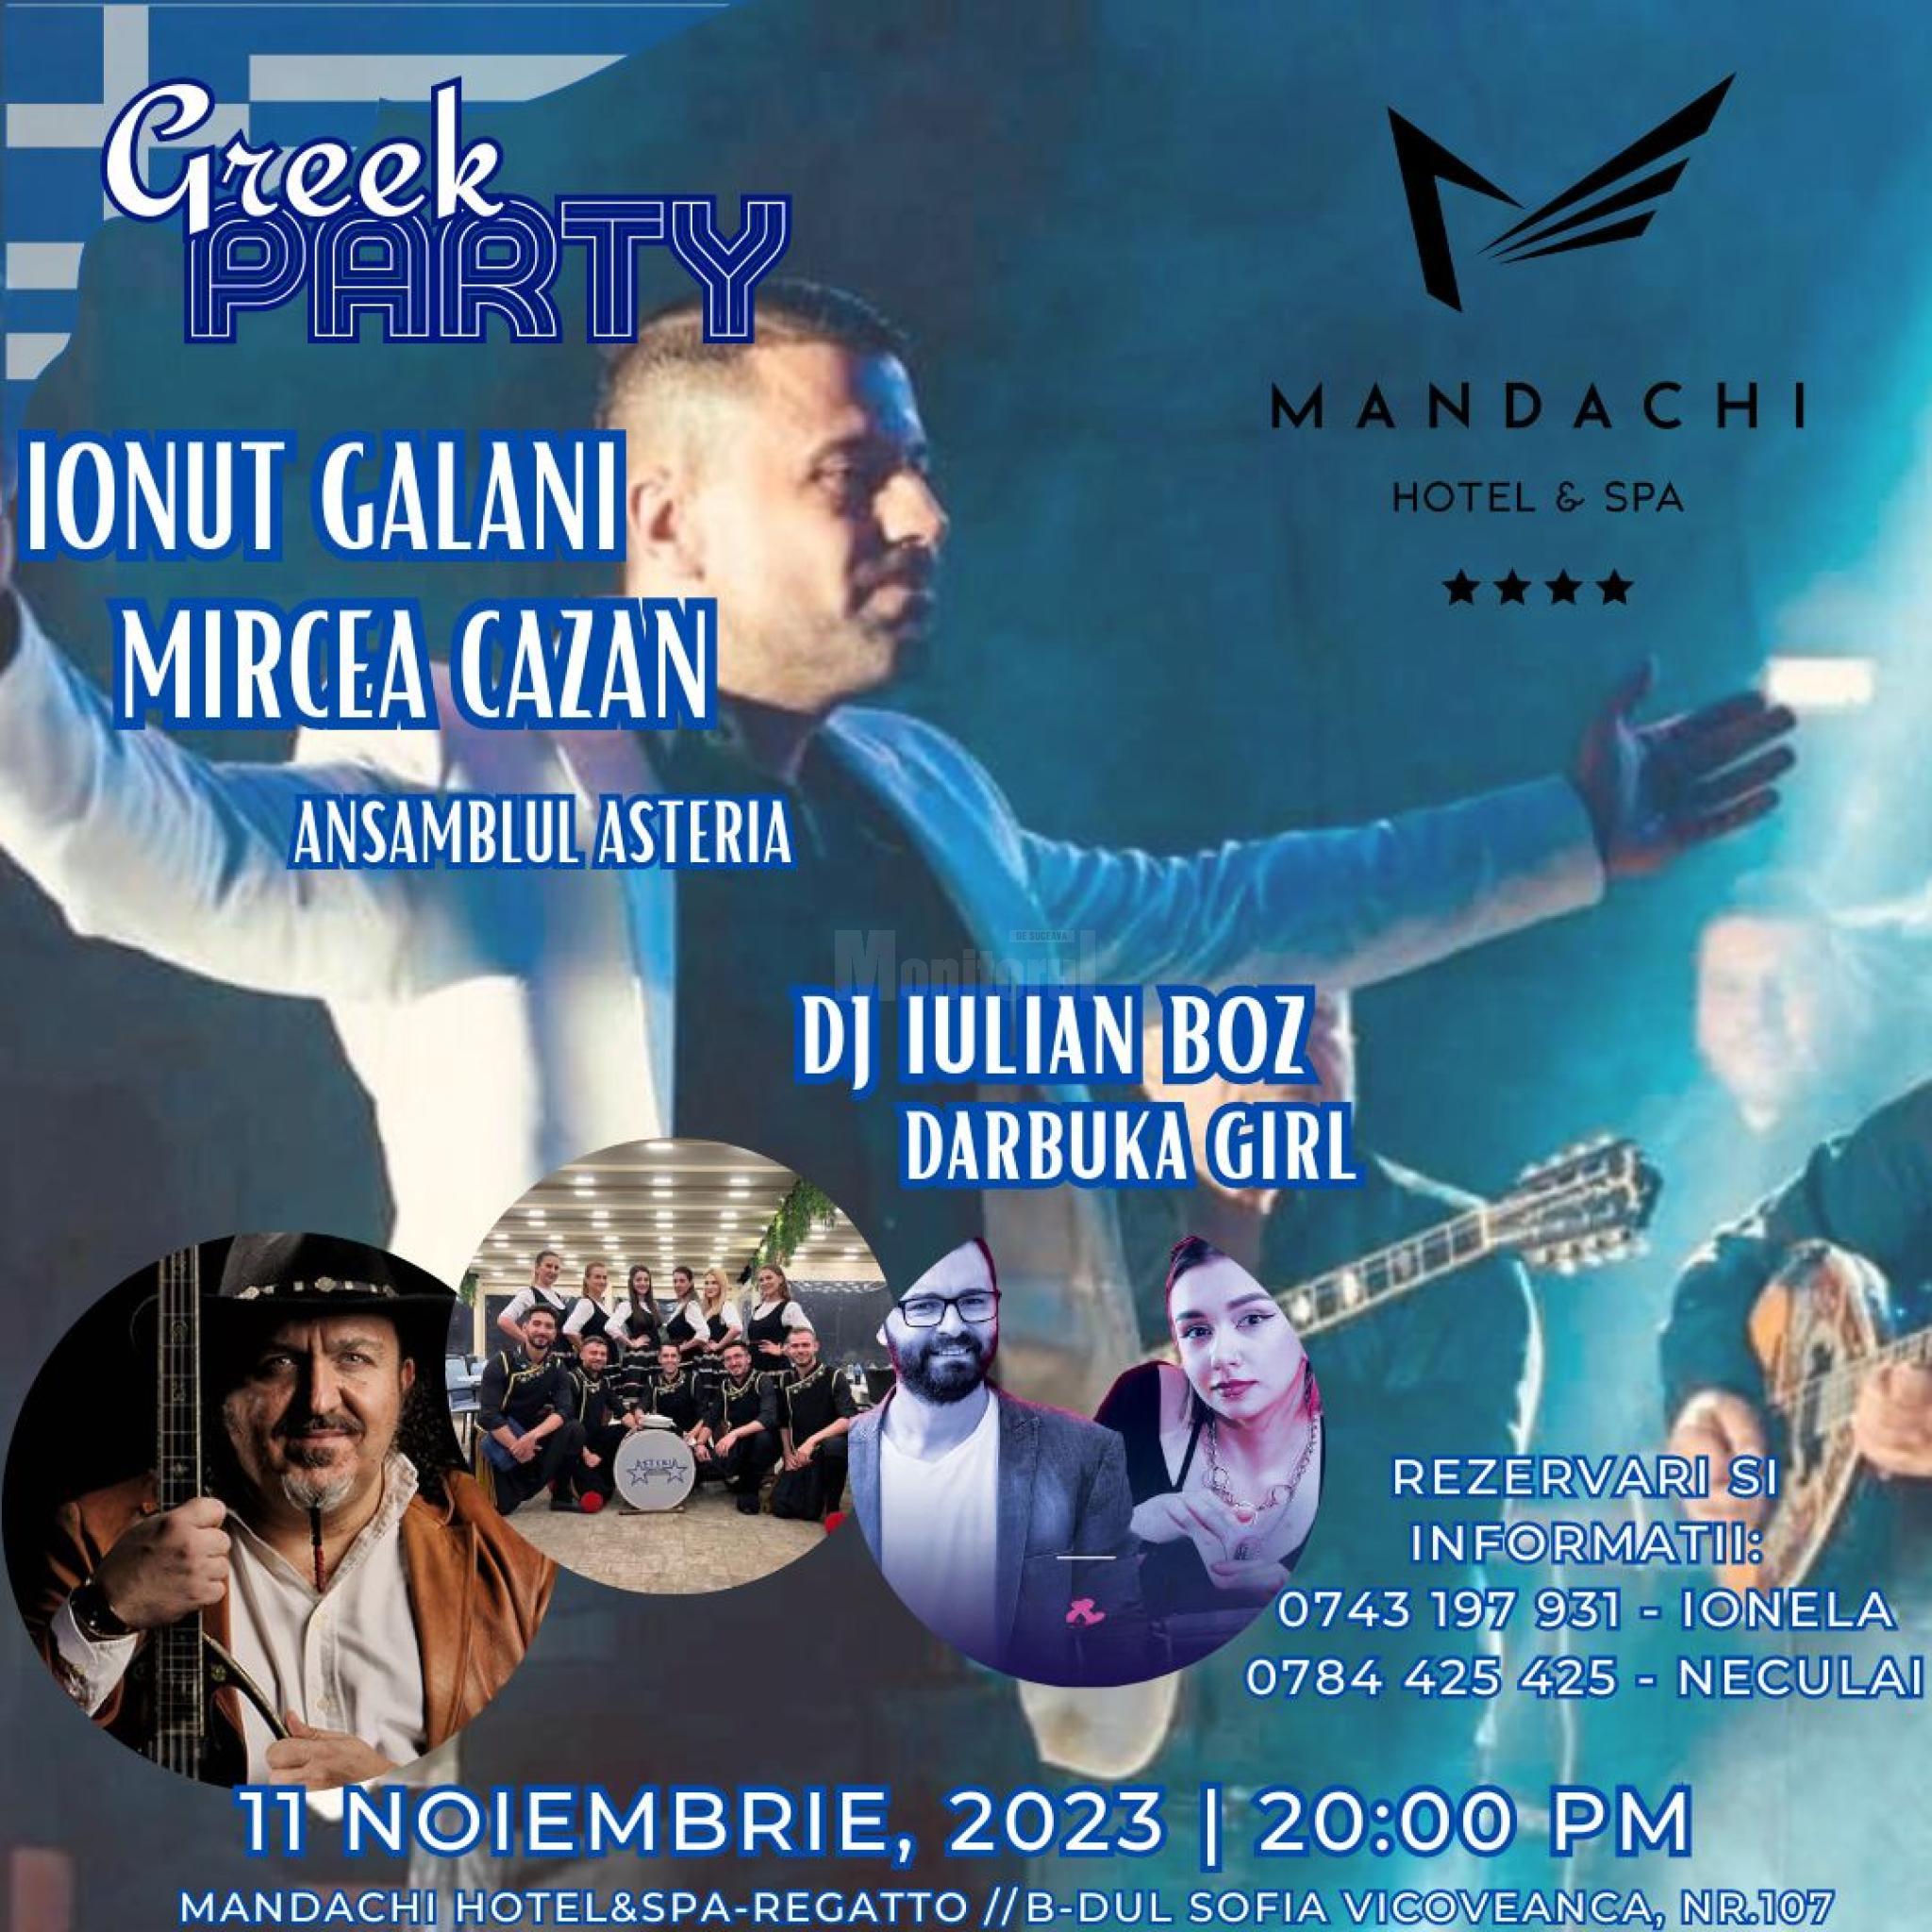 Τελευταία τοπική ώρα: Ελληνική βραδιά με ζωντανή μουσική και ειδικό μενού το Σάββατο στο Regatto Mandachi HotelSpa » Monitorul στη Σουτσεάβα